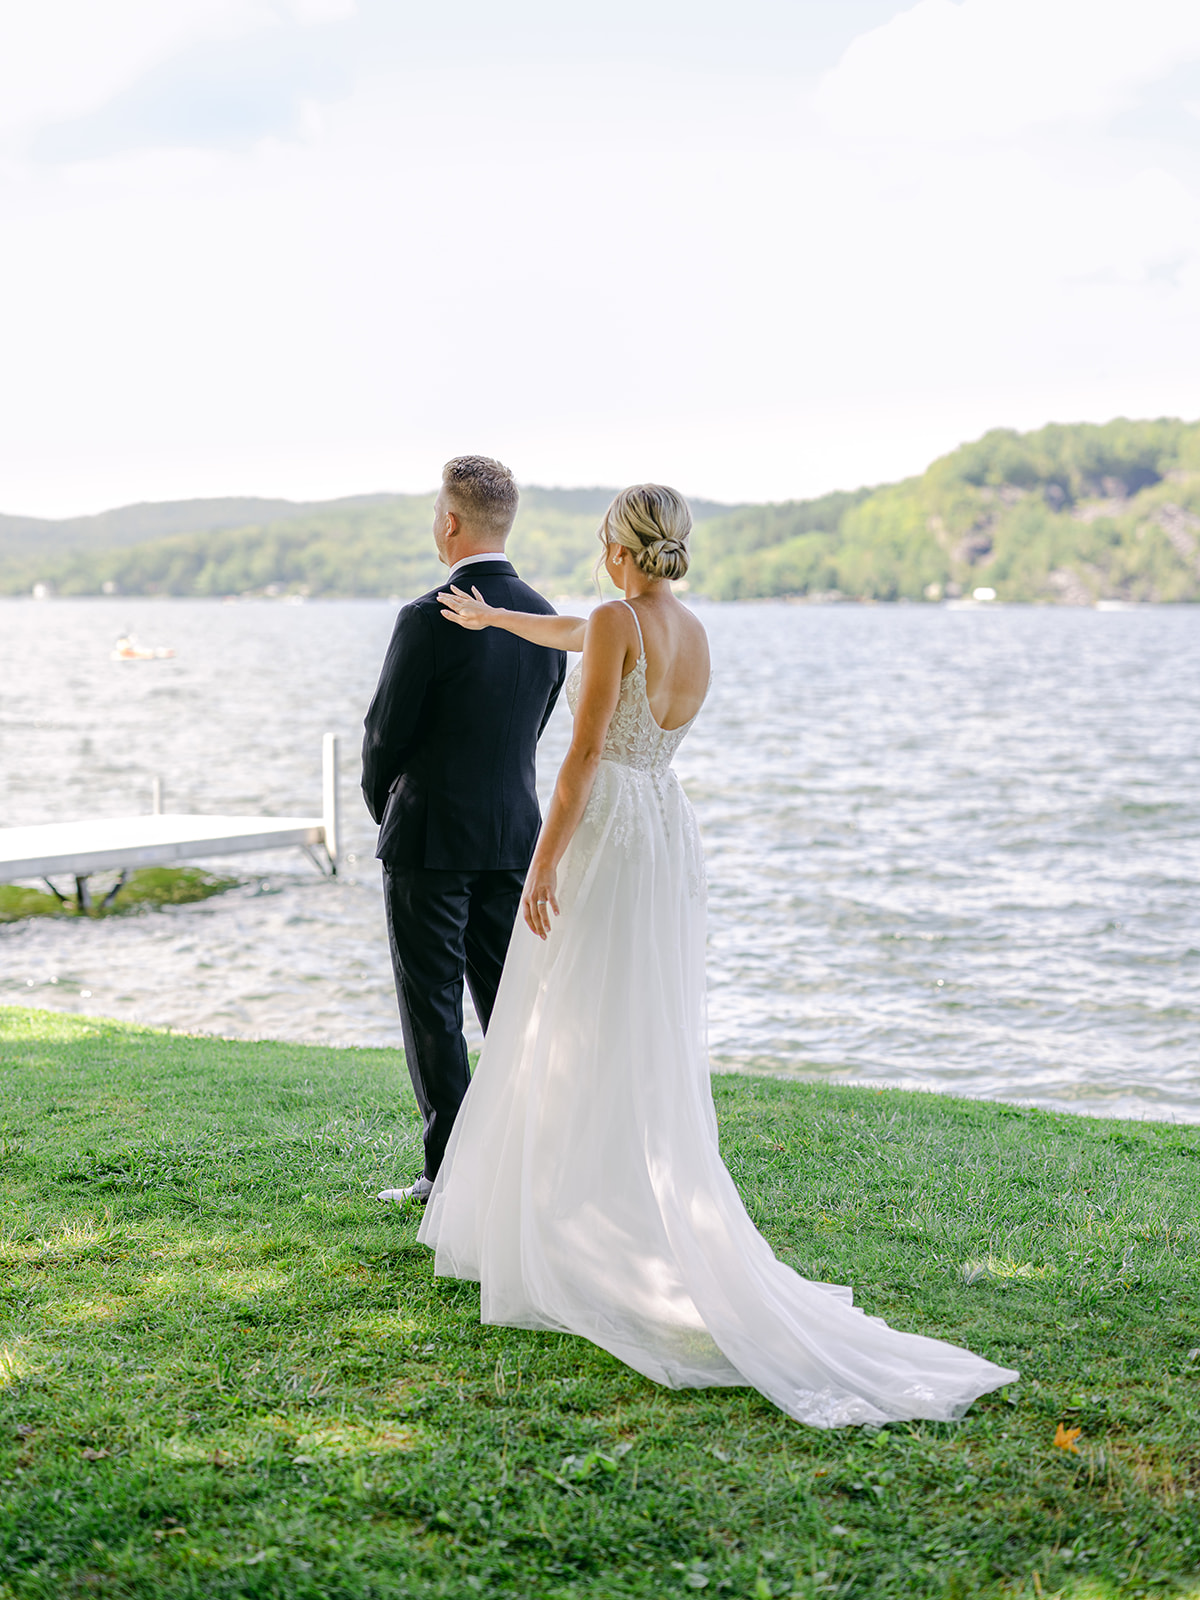 Wedding First Look at Lake Bomoseen